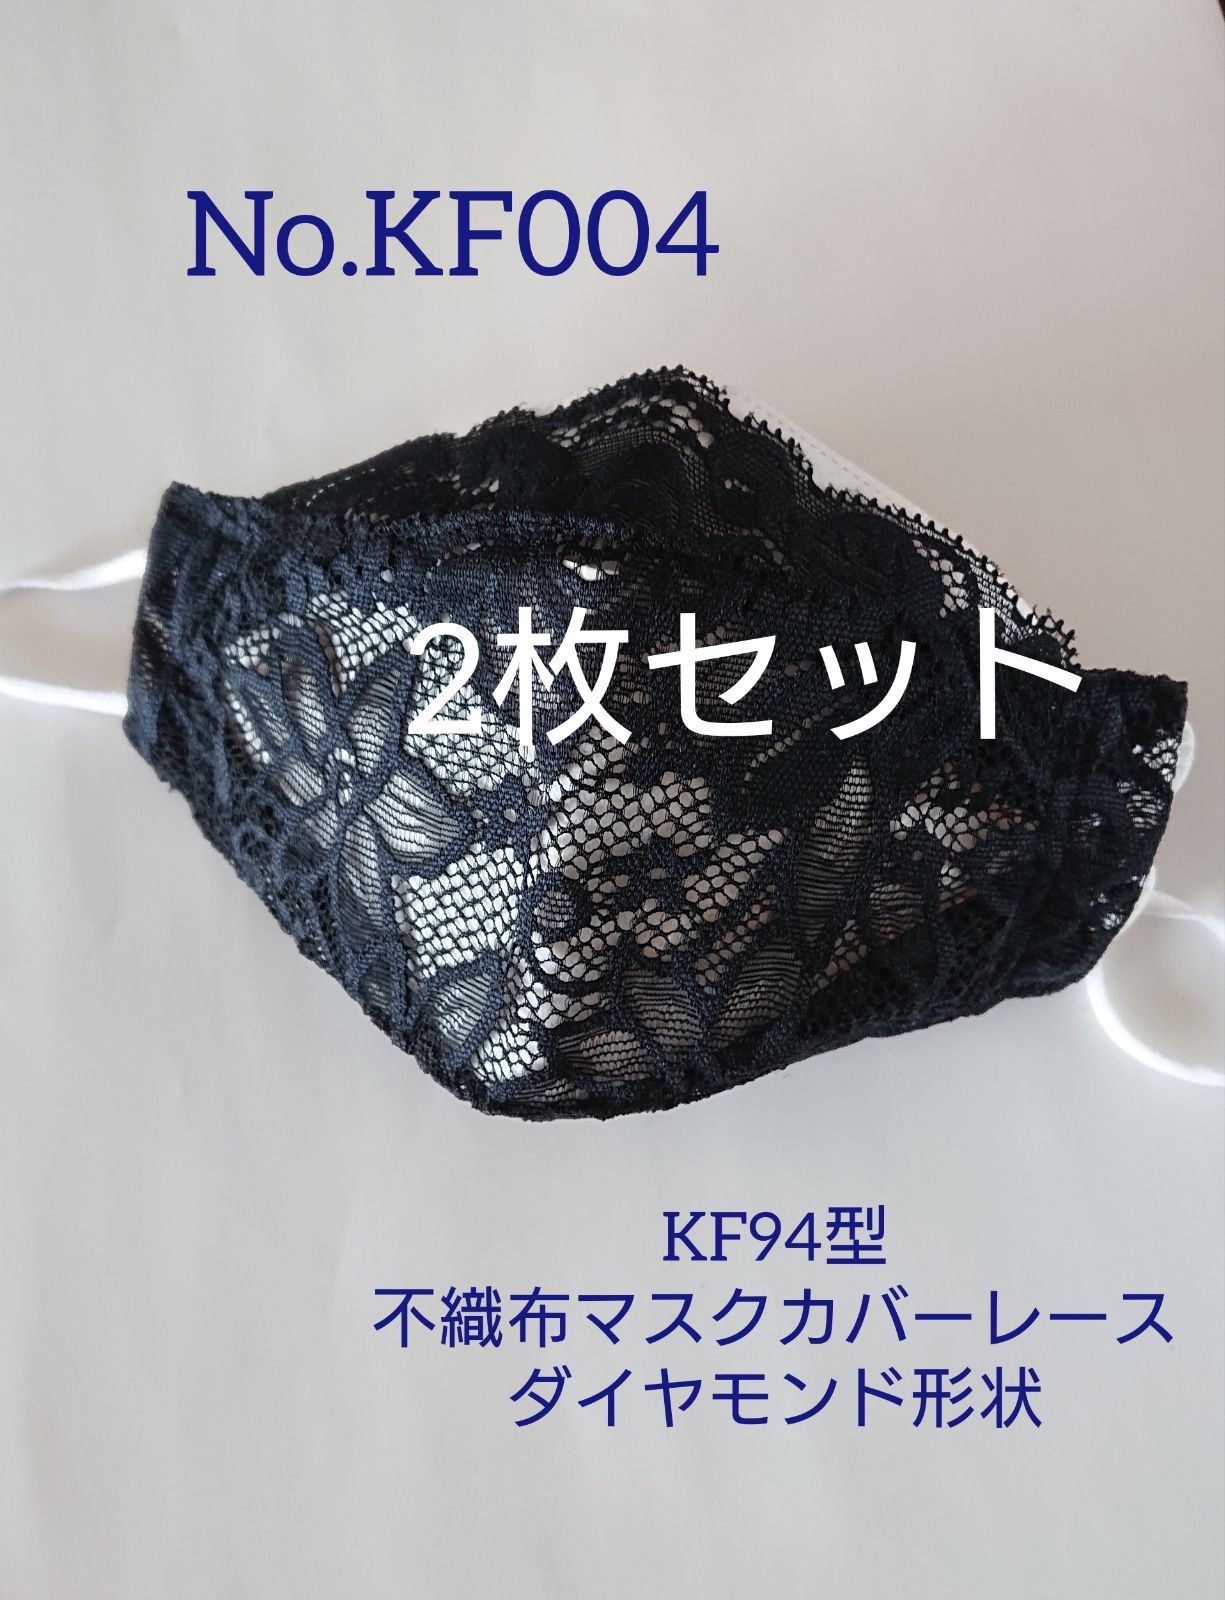 ラストNo.KF472 KF94型不織布マスクカバーレースダイヤモンド形状